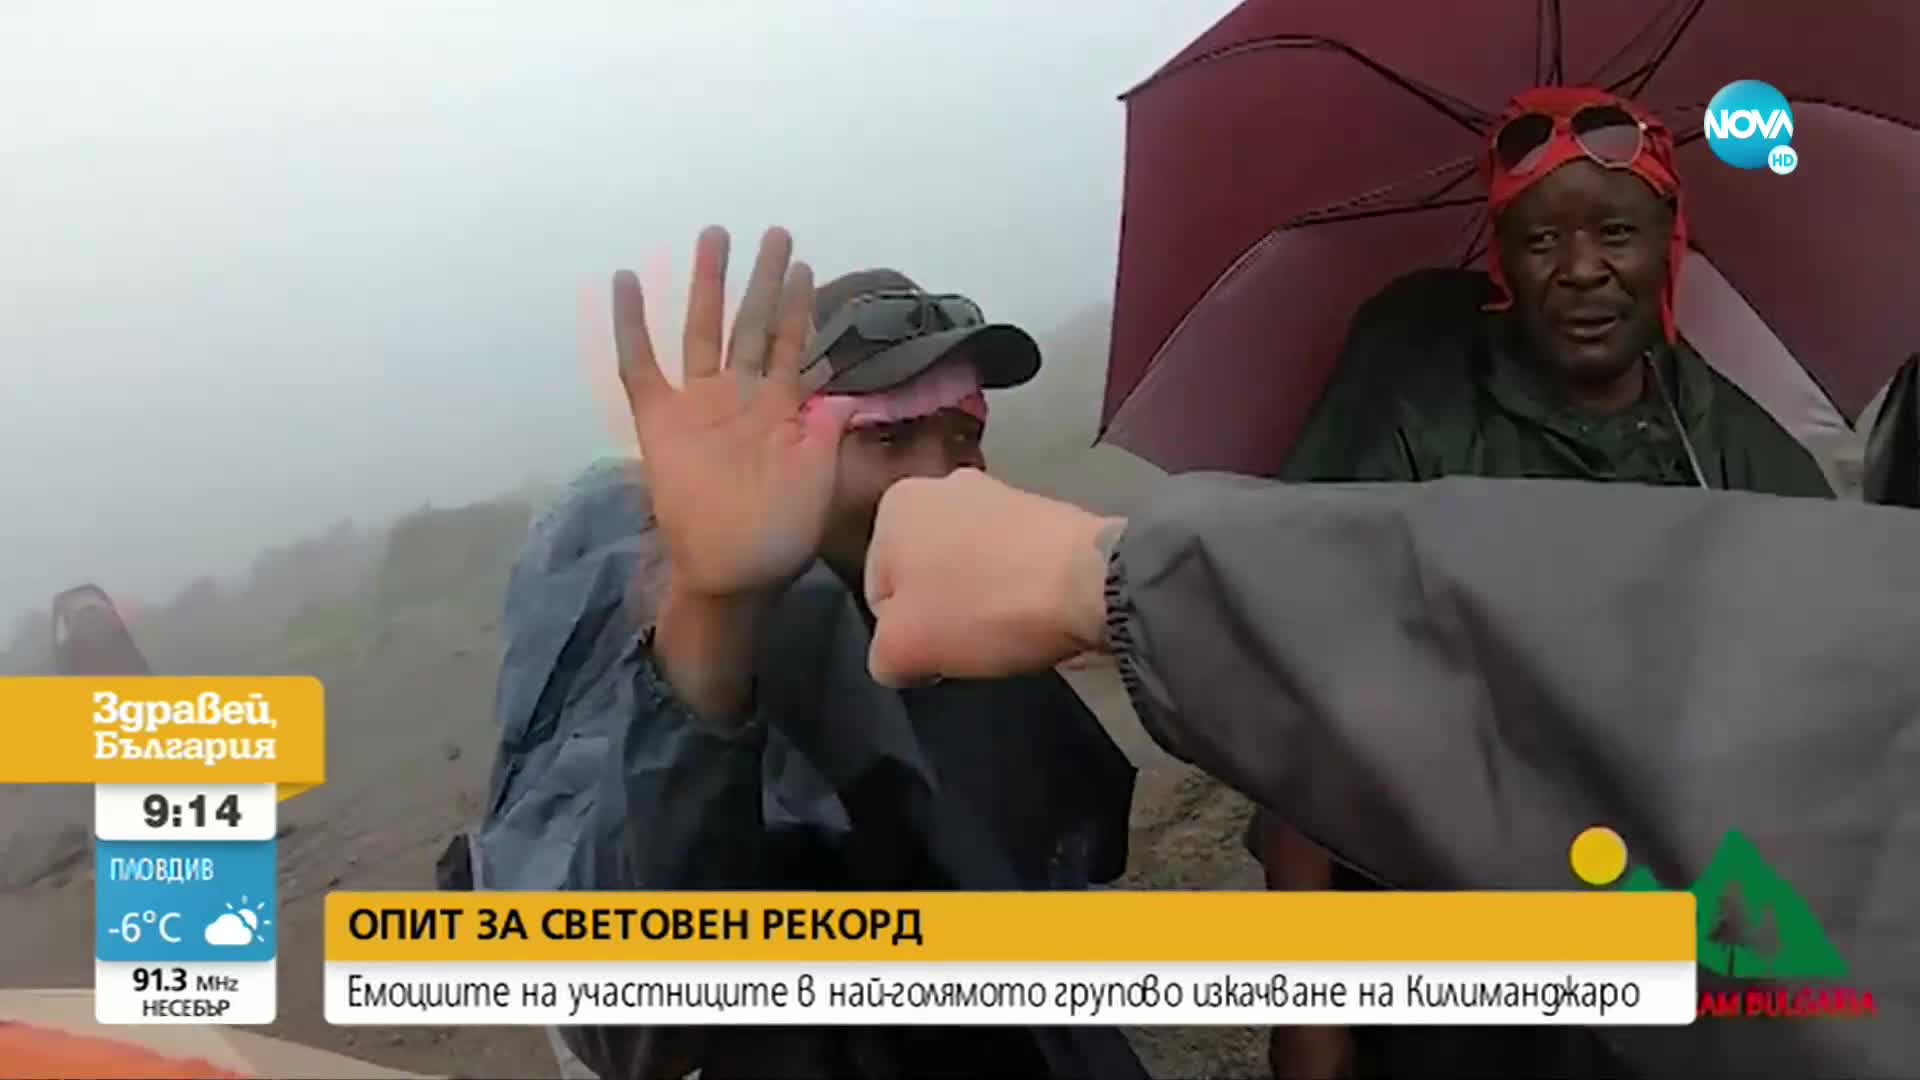 ОПИТ ЗА СВЕТОВЕН РЕКОРД: 28 българи ще изкачат групово Килиманджаро